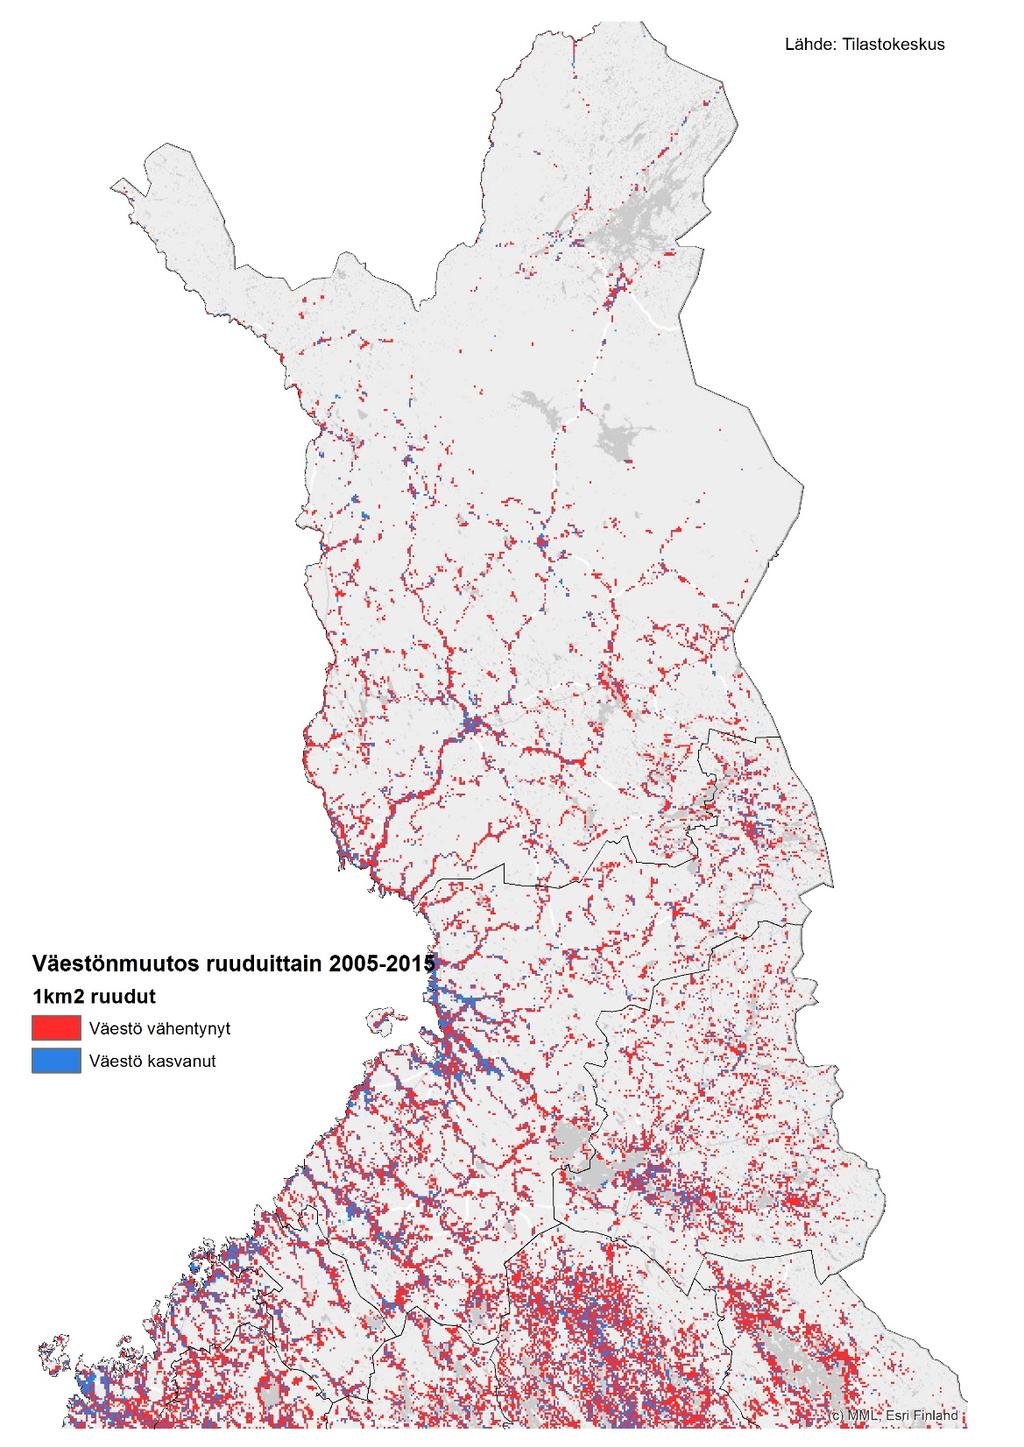 Pohjois-Suomen väestömuutos 1 x